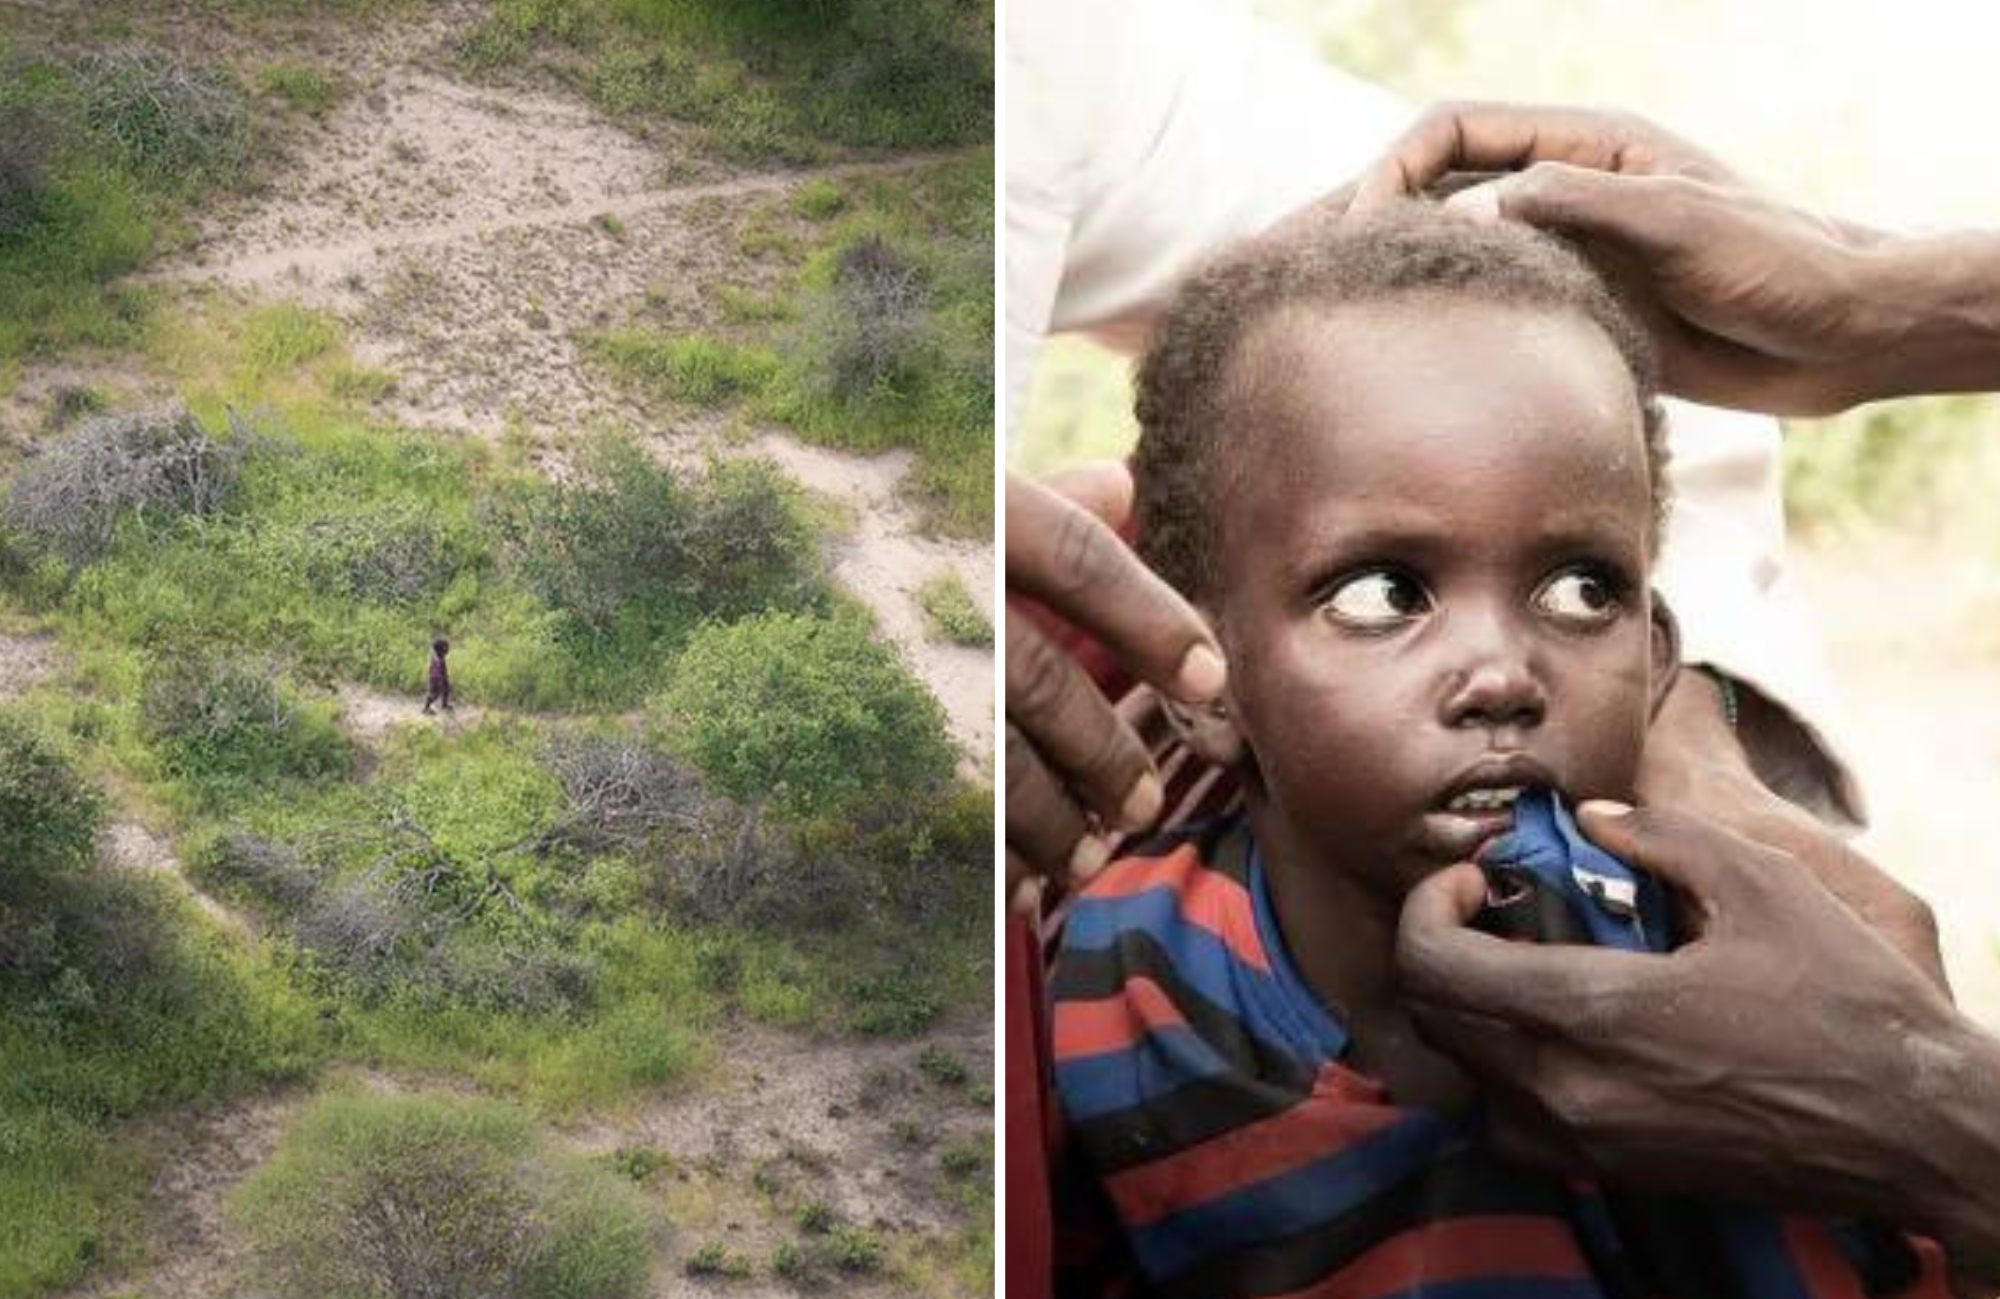 Piloto encontra menino de 4 anos ileso após 6 dias perdido em selva: ‘Foi um milagre’